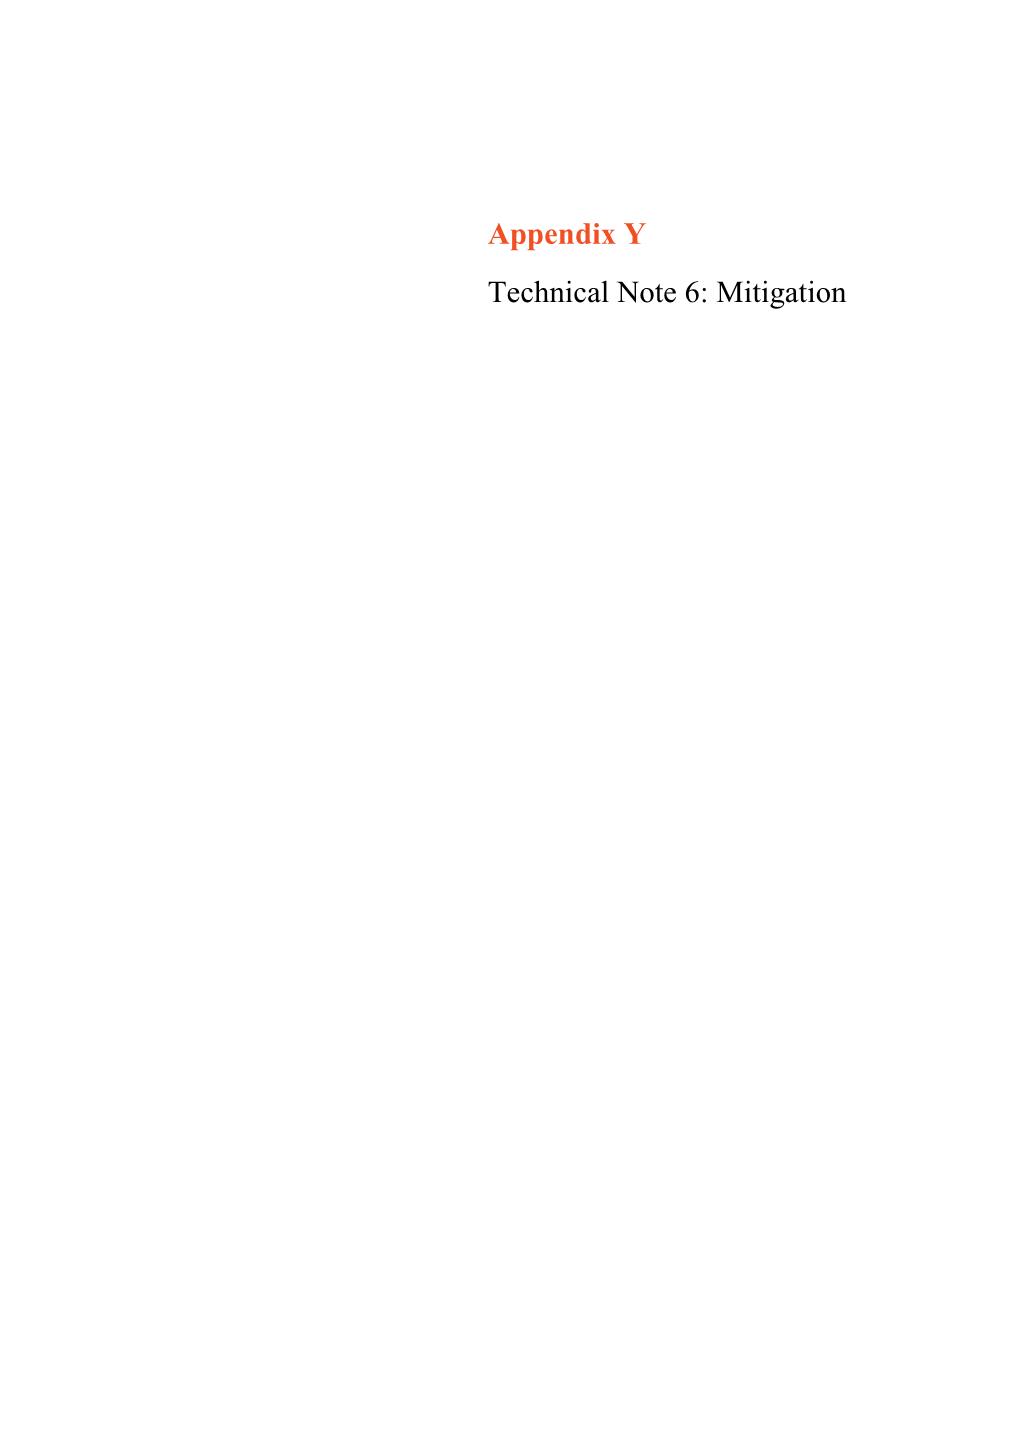 Appendix Y Technical Note 6: Mitigation